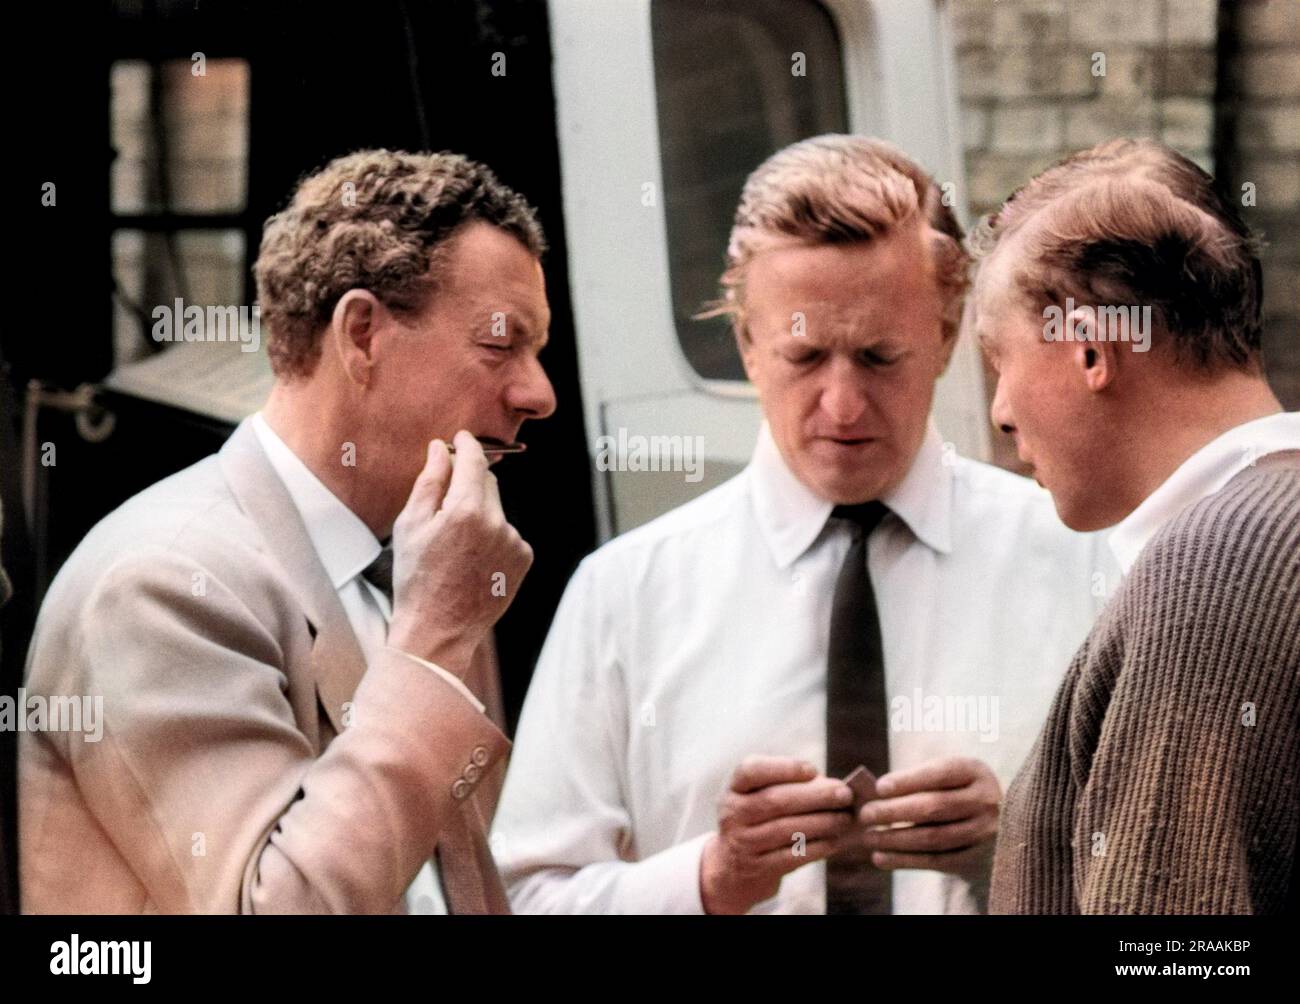 Benjamin Britten et Peter Pears parlent à un homme non identifié. Festival d'Aldeburgh, 1963 Date: 1963 Banque D'Images